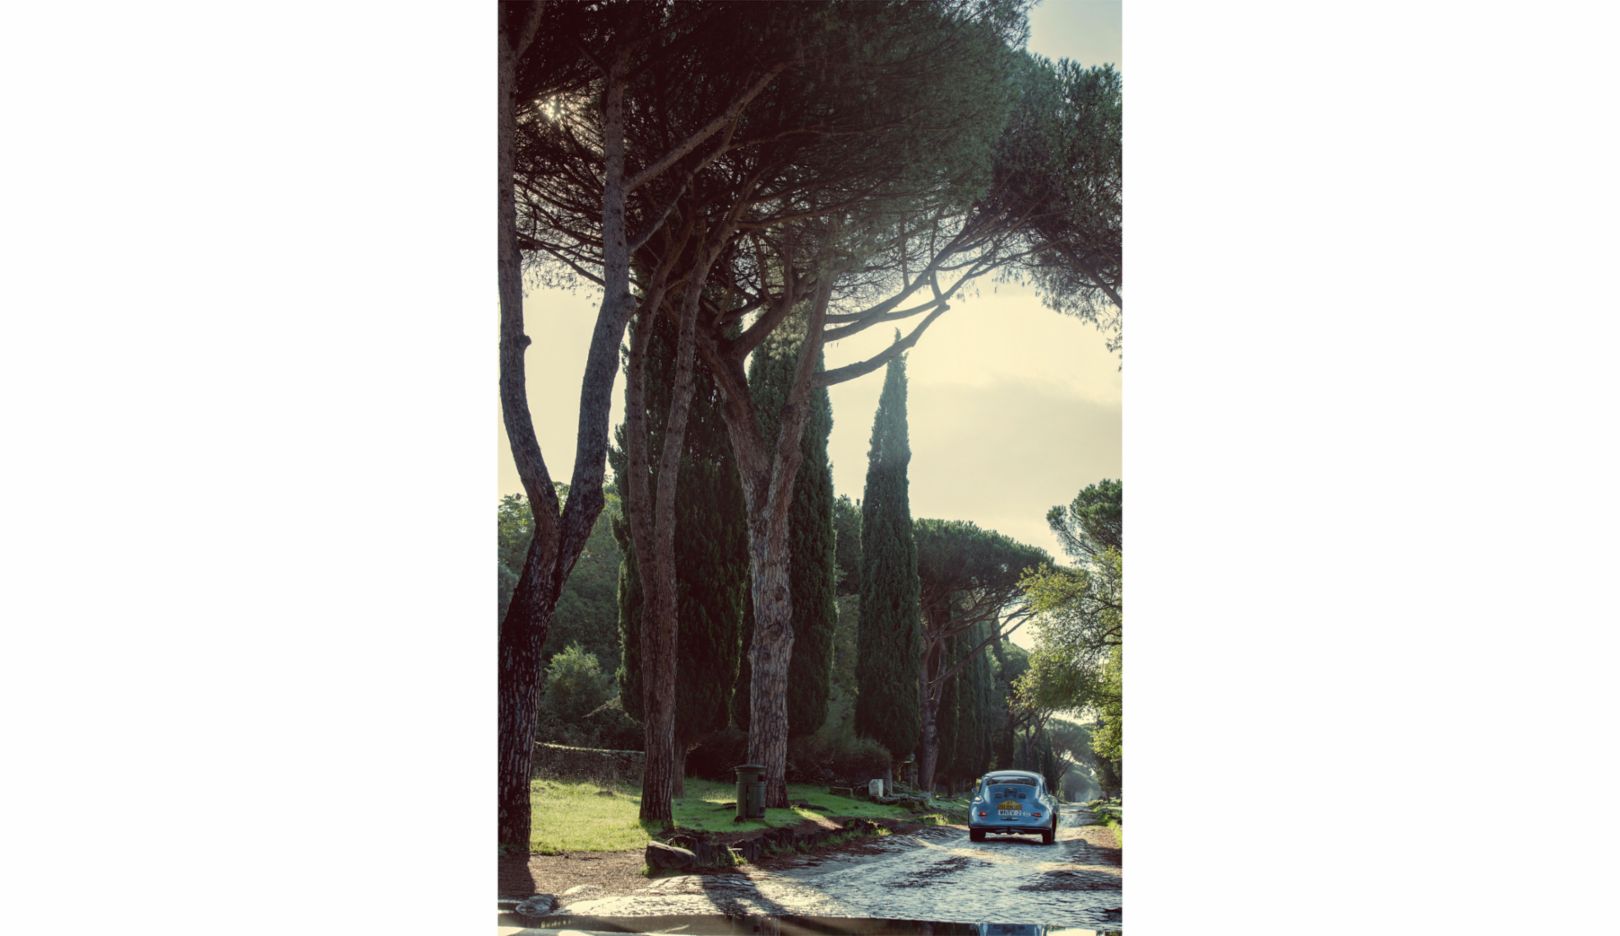 Historischer Rennwagen auf historischem Pflaster: „Königin der Straßen“ wurde die Via Appia in der Antike genannt. Über den einstigen Handelsweg mit mehr als 2.000 Jahren Geschichte verlässt die „V2“ Rom.